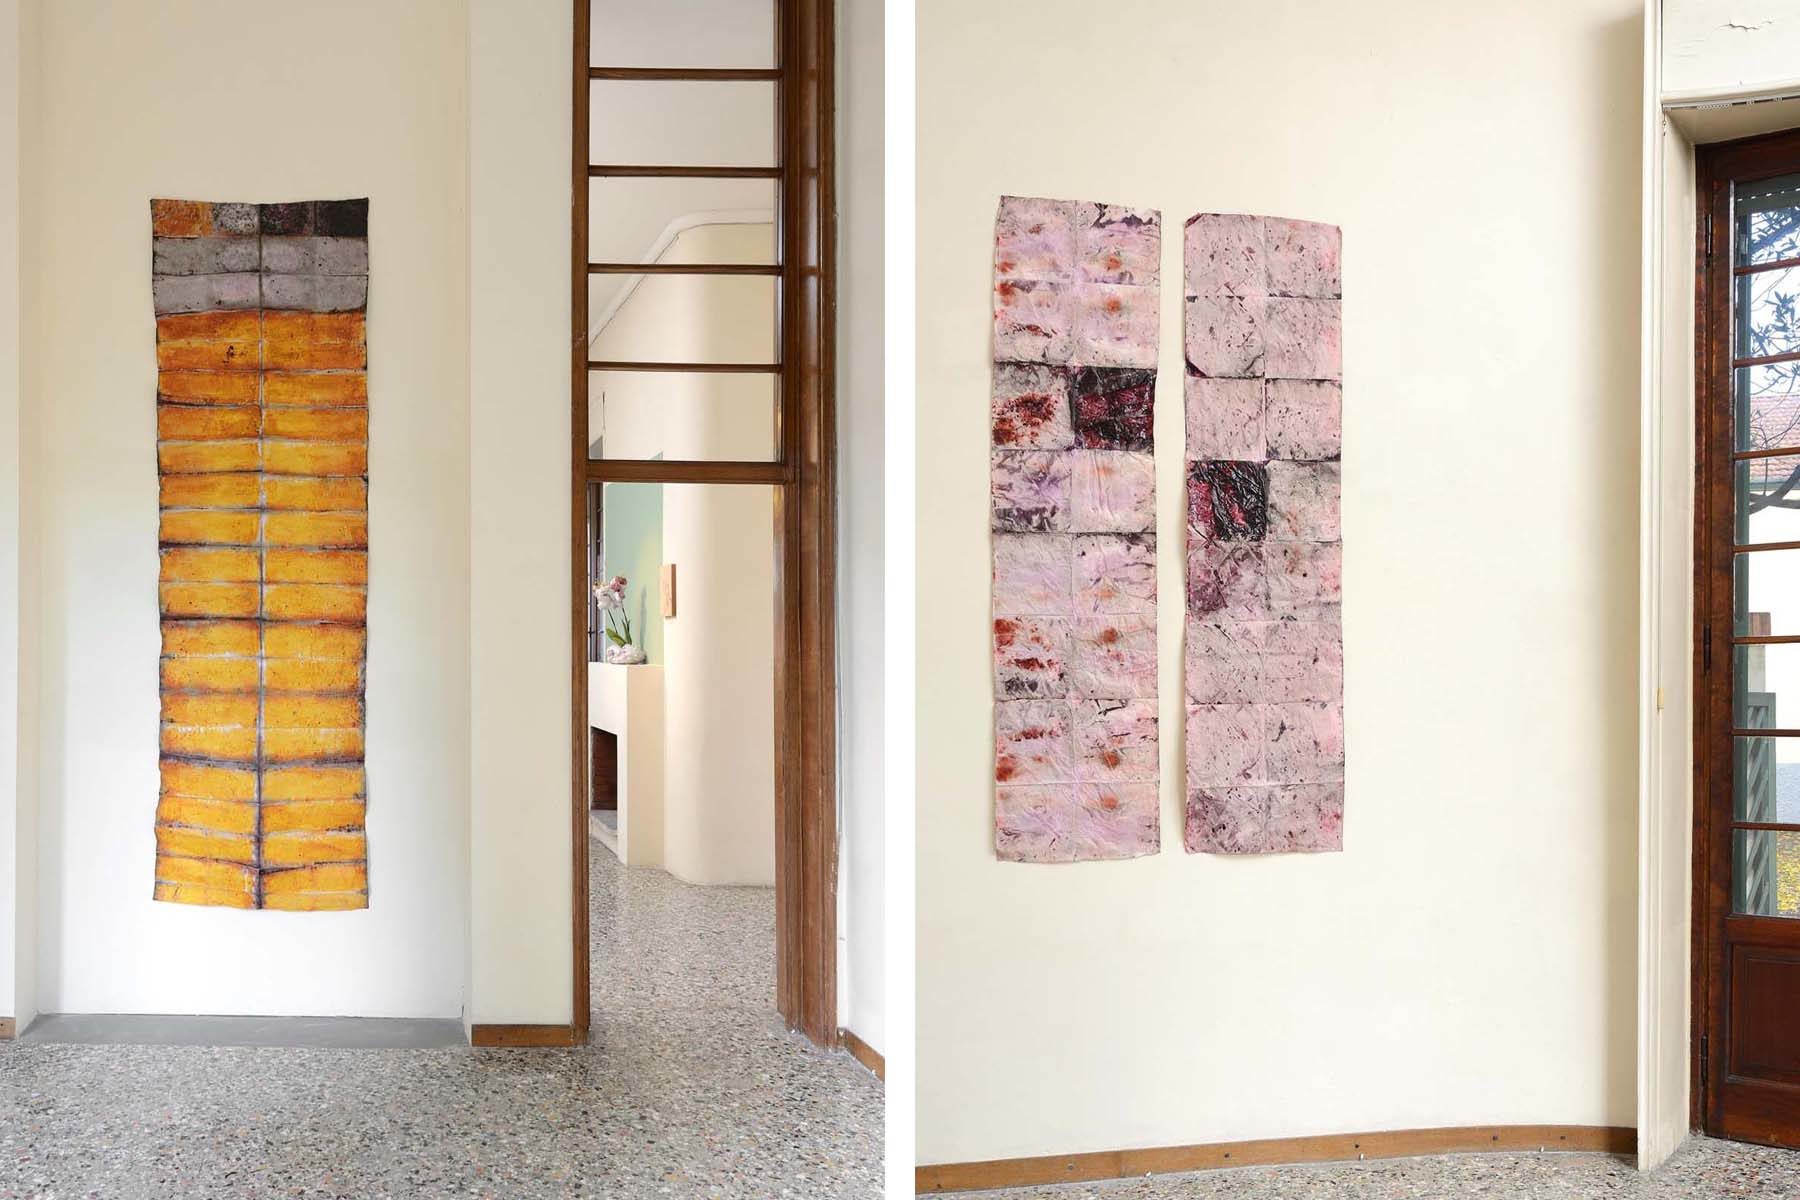 Libere Tutte, installation view, Casa Testori, Novate, 2019, ph. M.A. Sereni